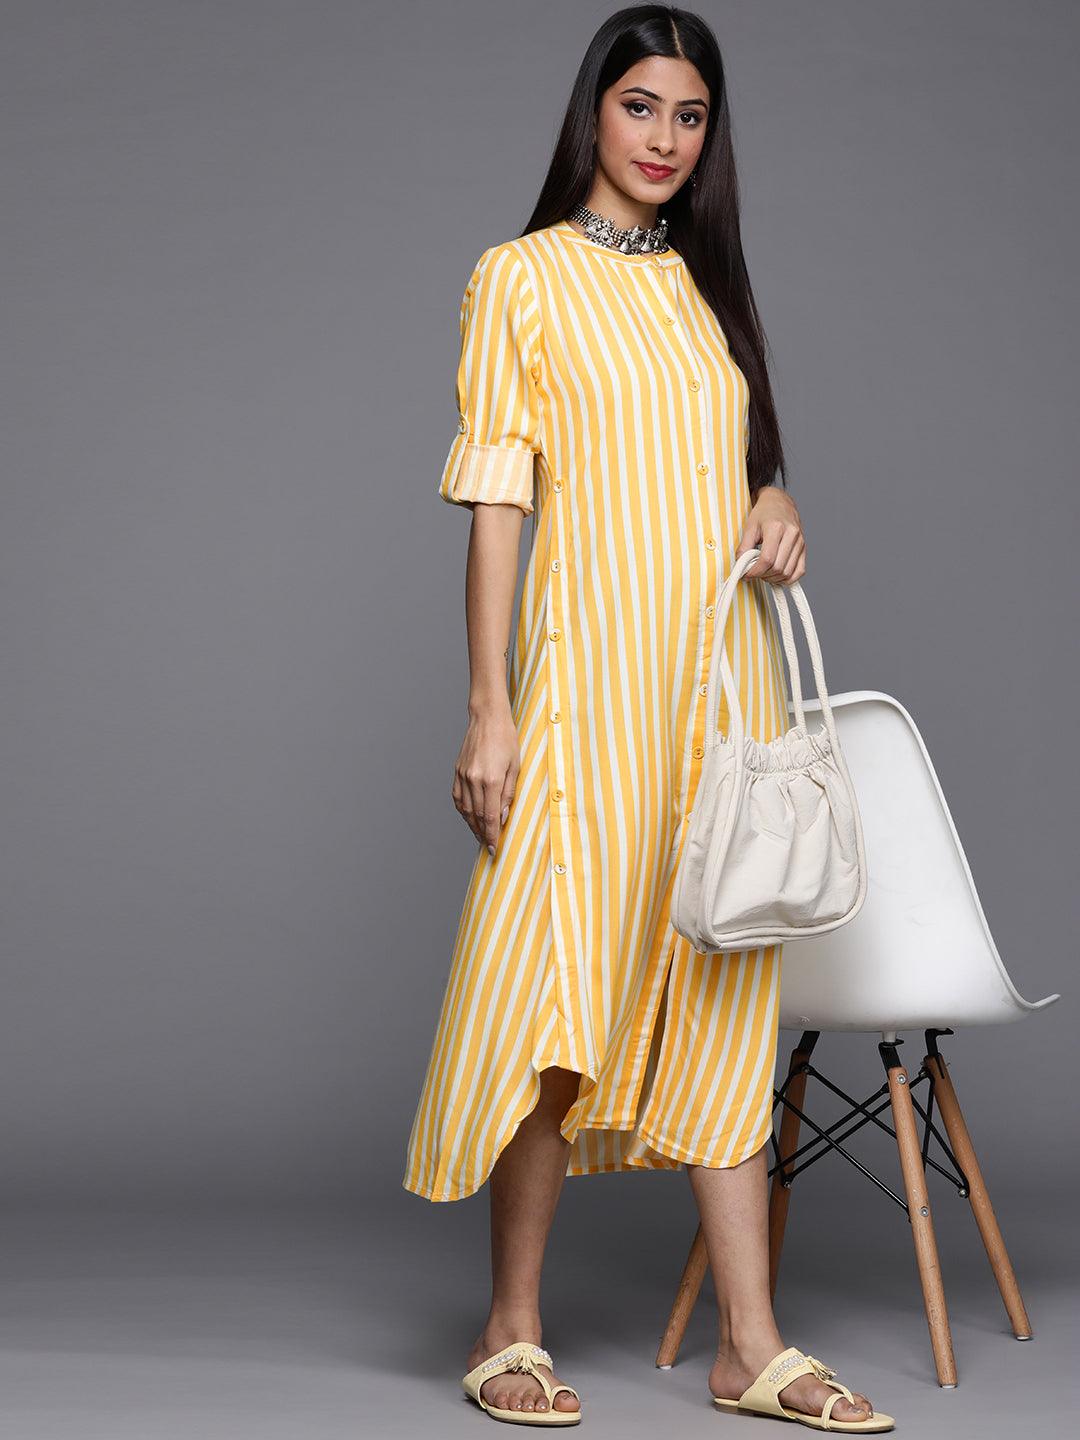 Yellow Striped Rayon Dress